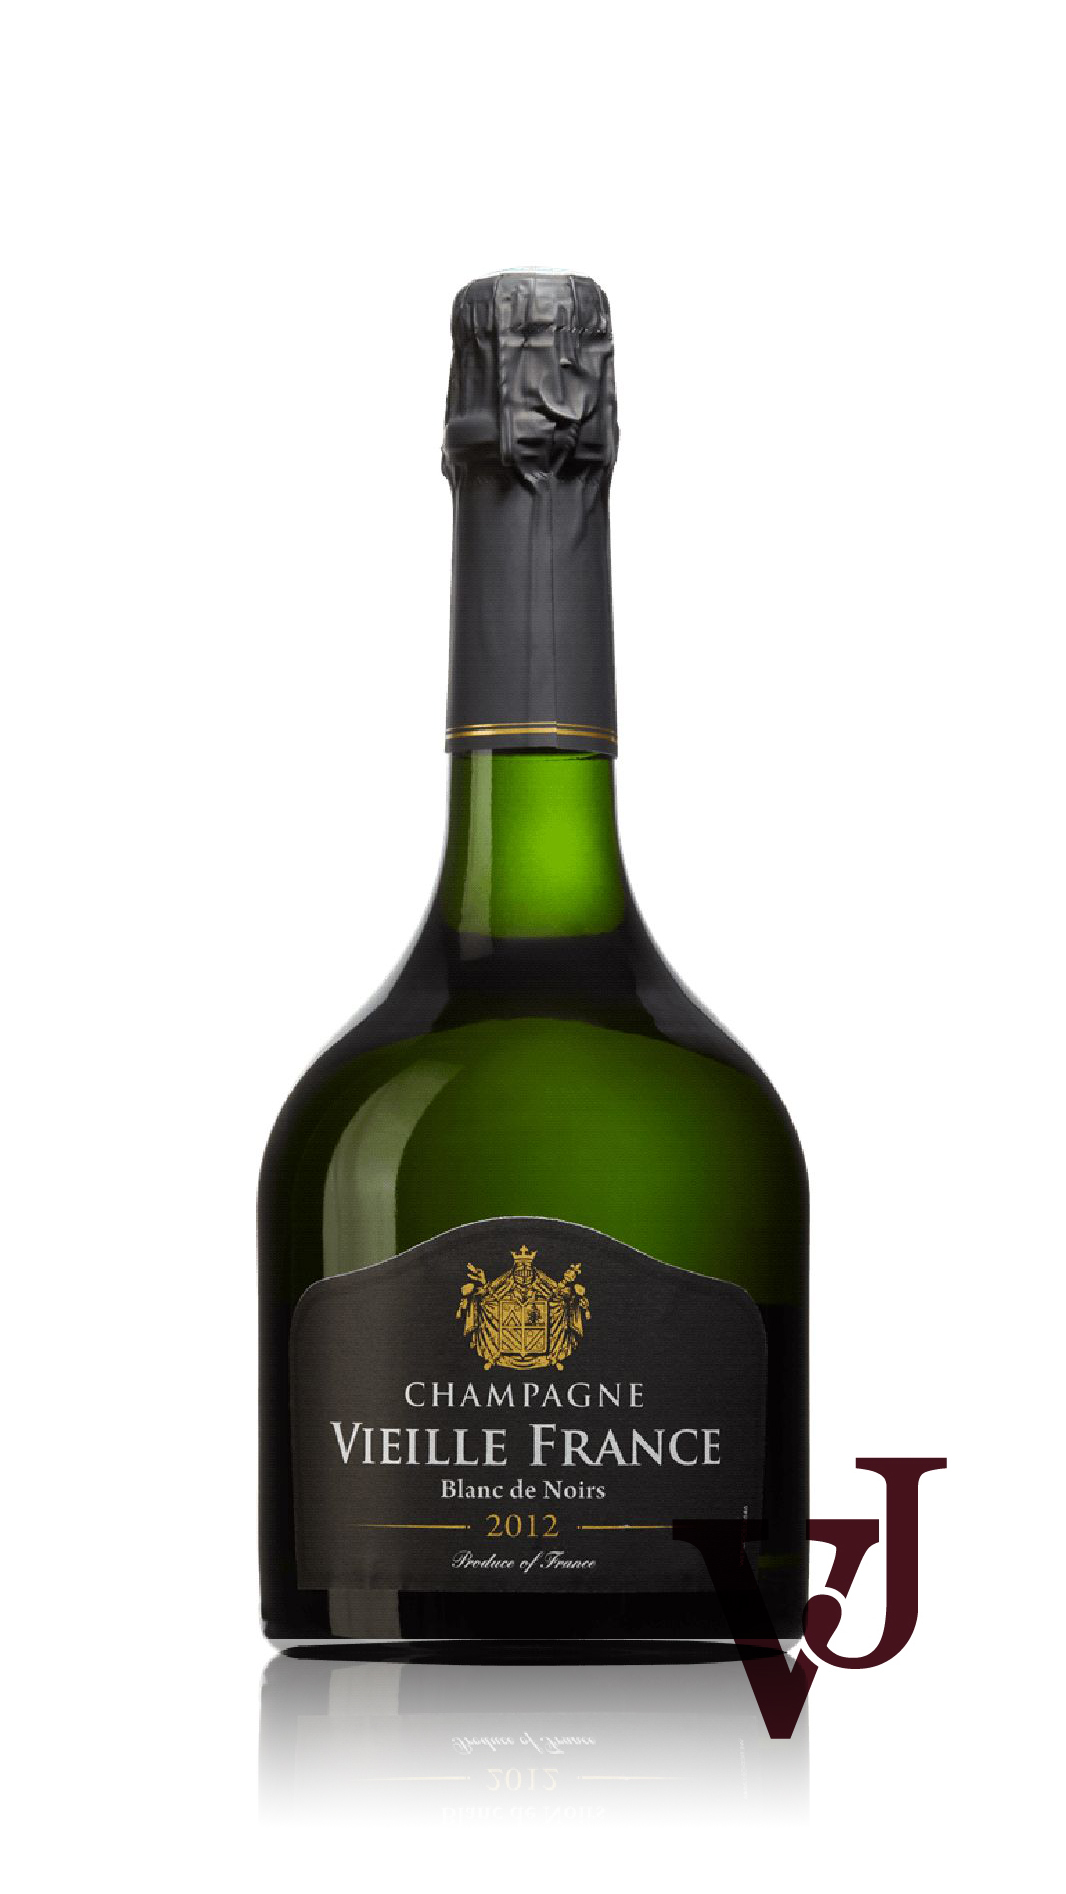 Champagne Vieille France Blanc de Noirs